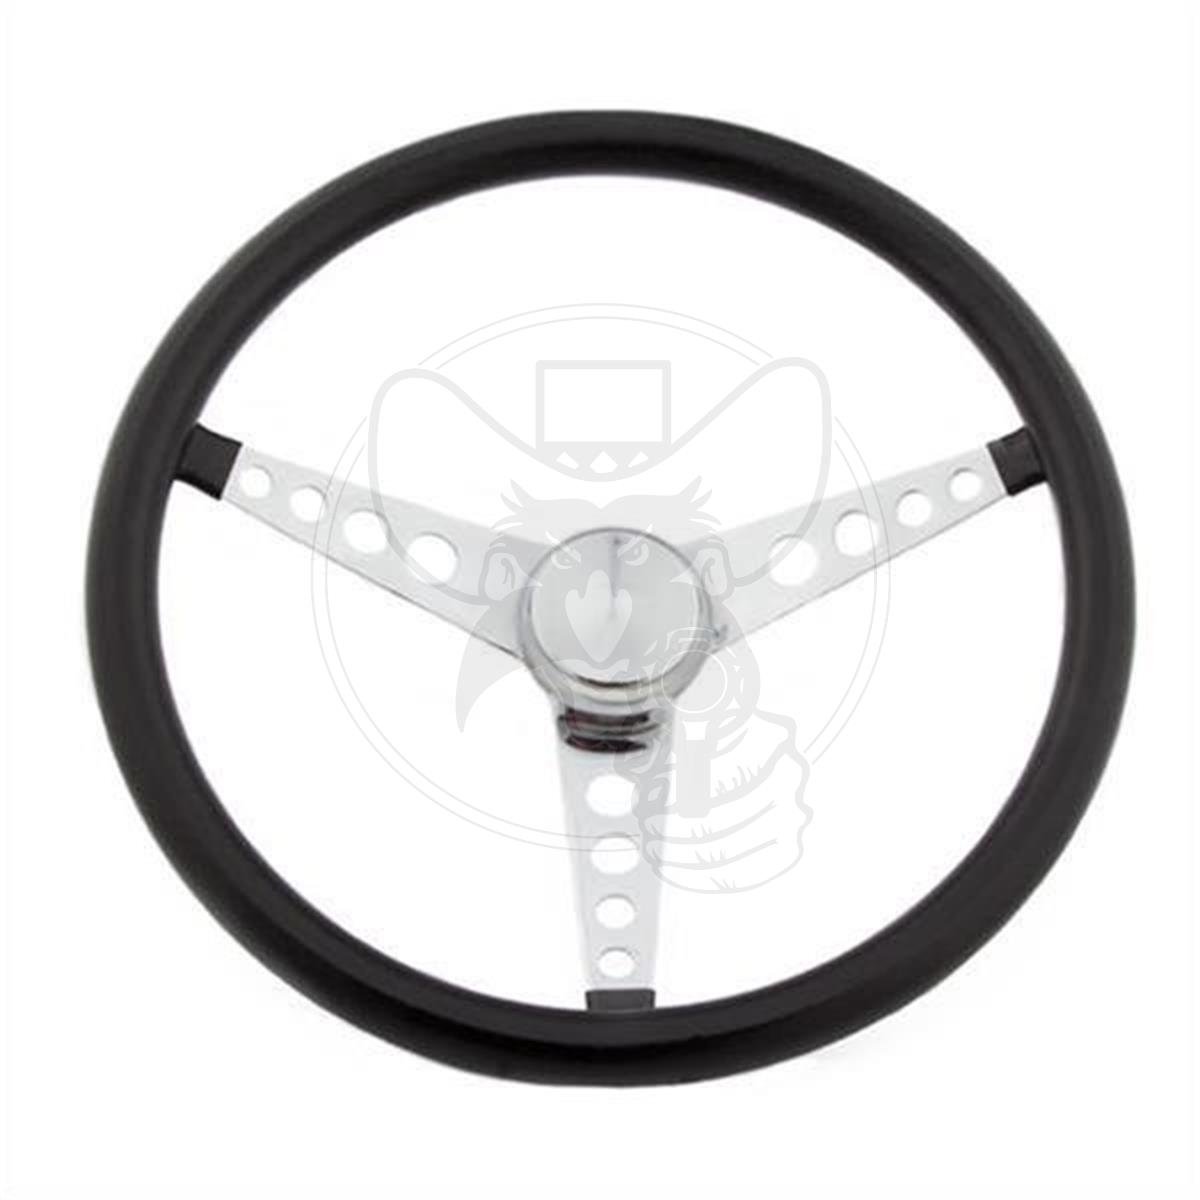 GRANT Classic 15" Black Vinyl Steering Wheel 3-Bolt Mount Chrome 3-Spoke